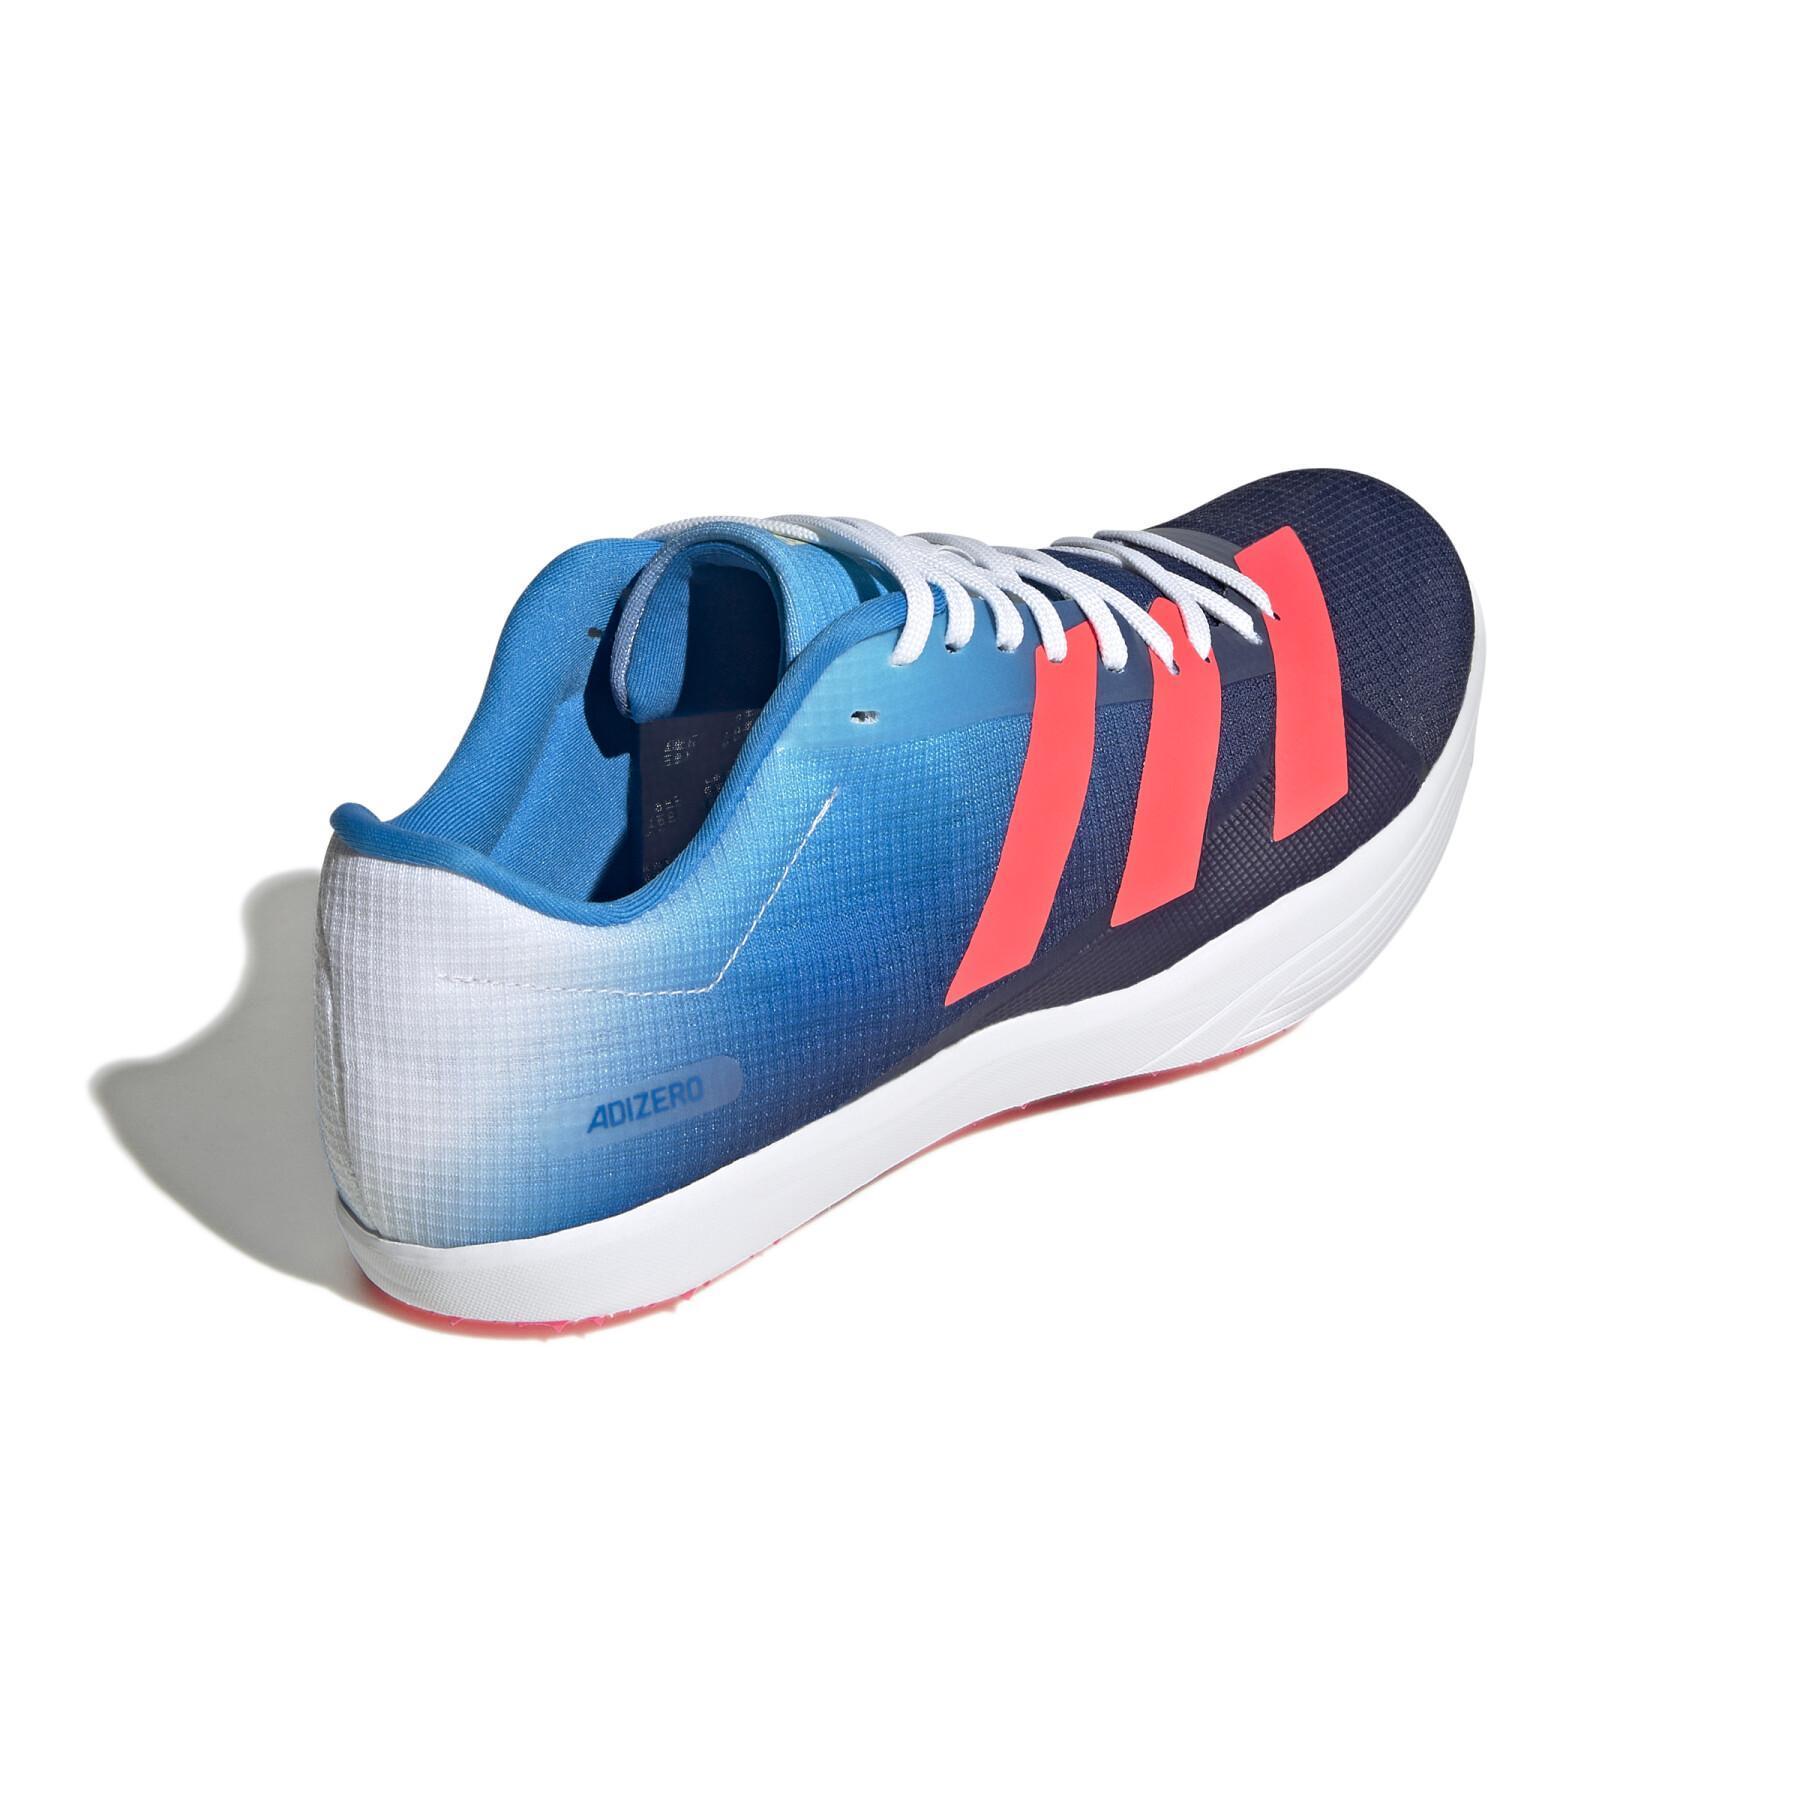 Skor för längdhopp adidas Adizero